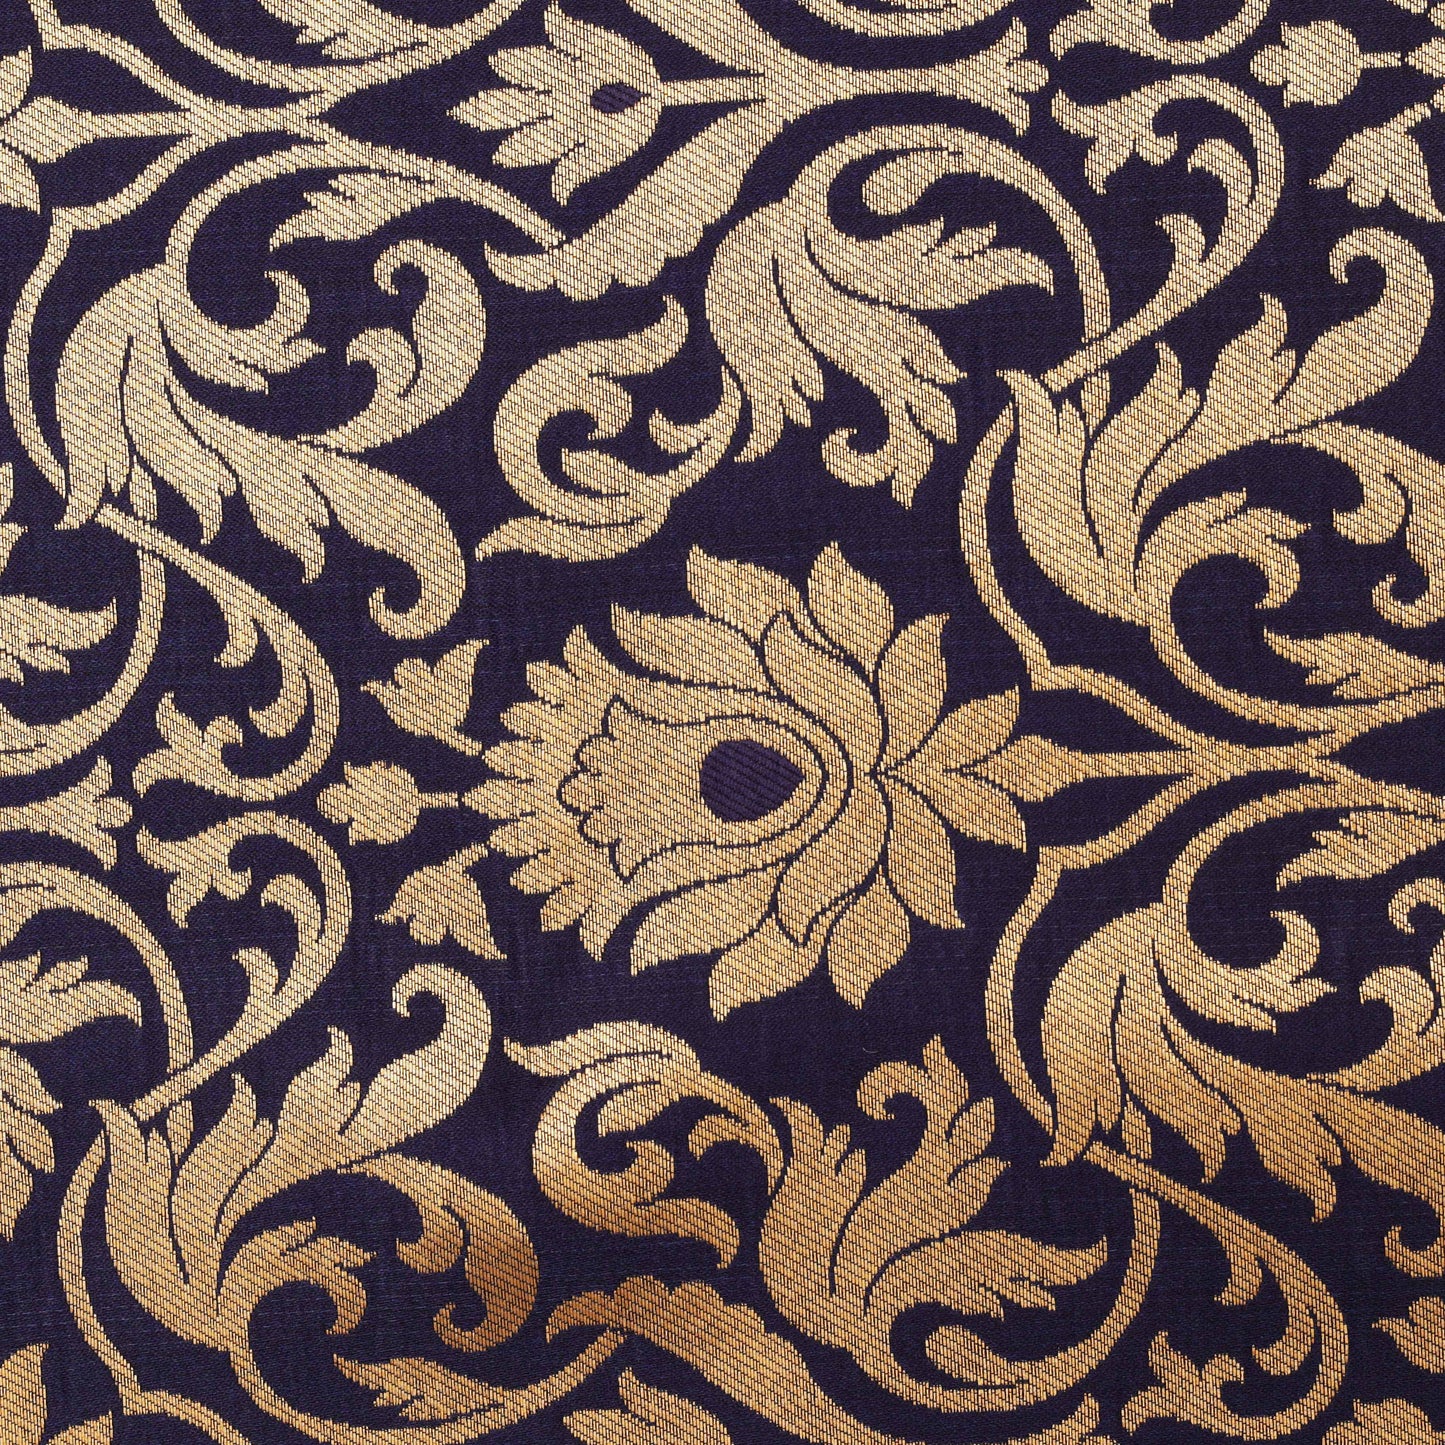 Navy Blue Color Zari Brocade Fabric